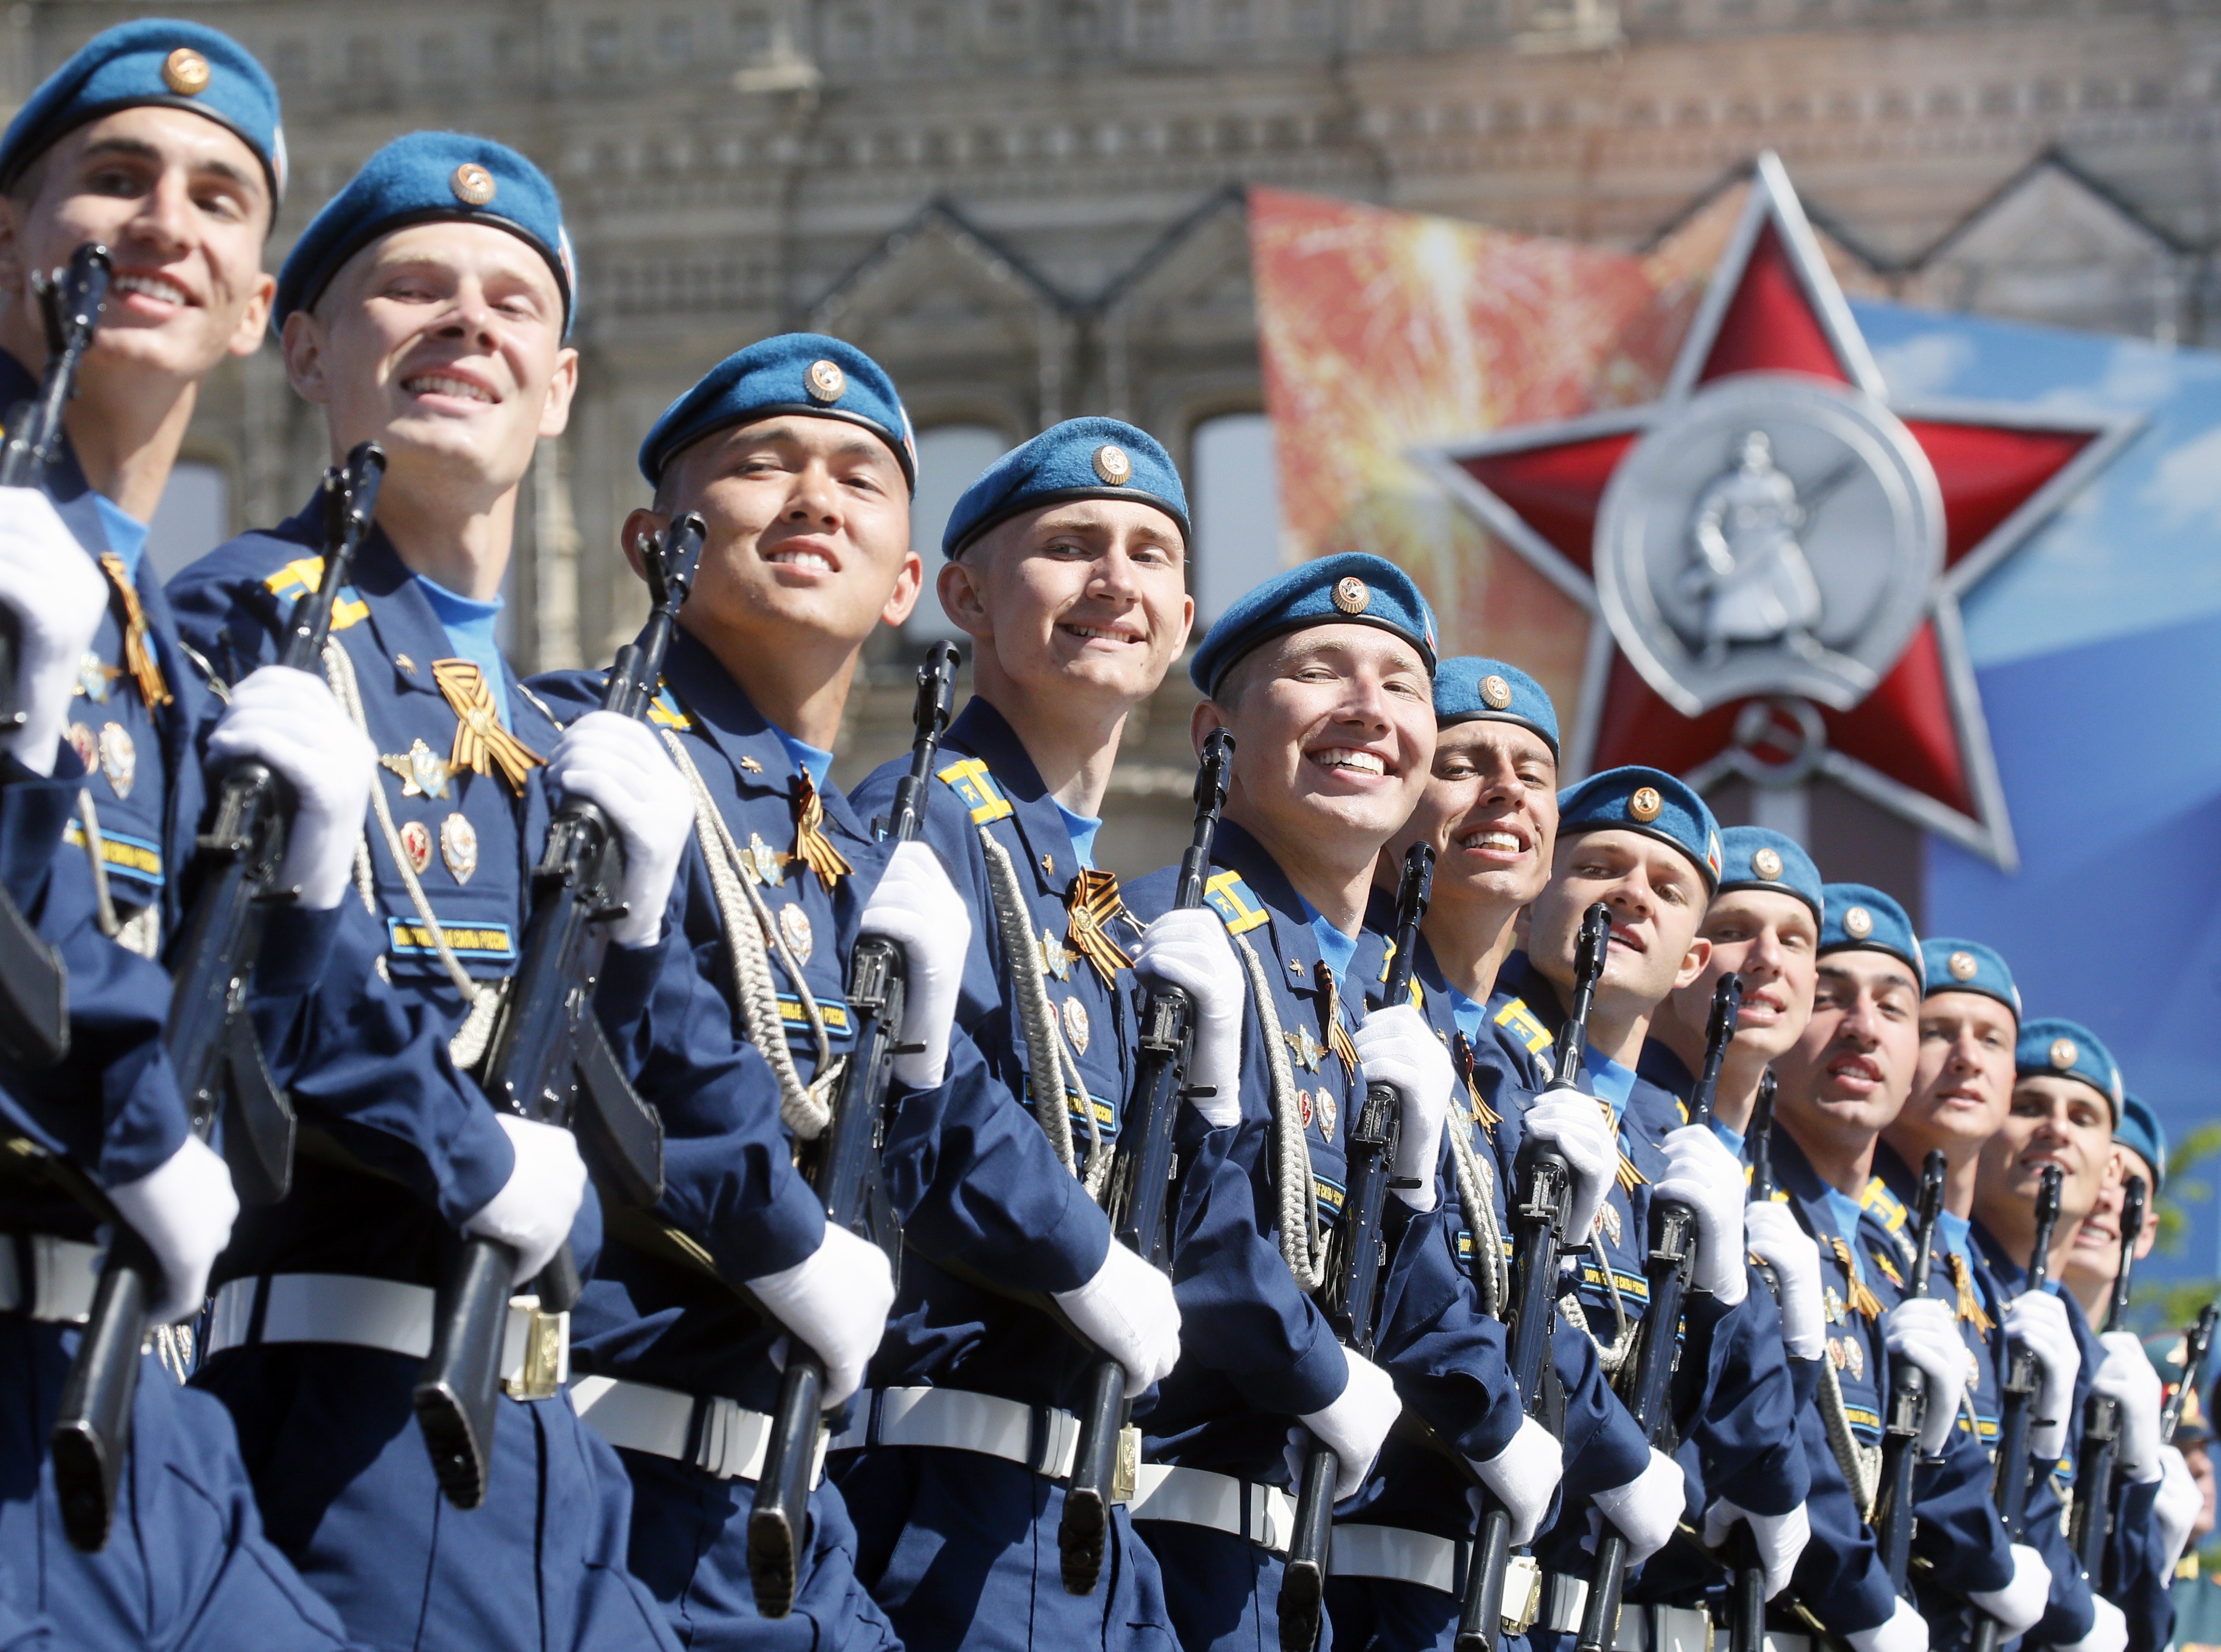 Денят на победата е особено важен за руснаците. Вчера Русия отбеляза 73-годишнината от края на Втората световна война в Европа. Още преди 9 май обаче в социалните мрежи започнаха да се въртят снимки на странния руски патриотизъм.